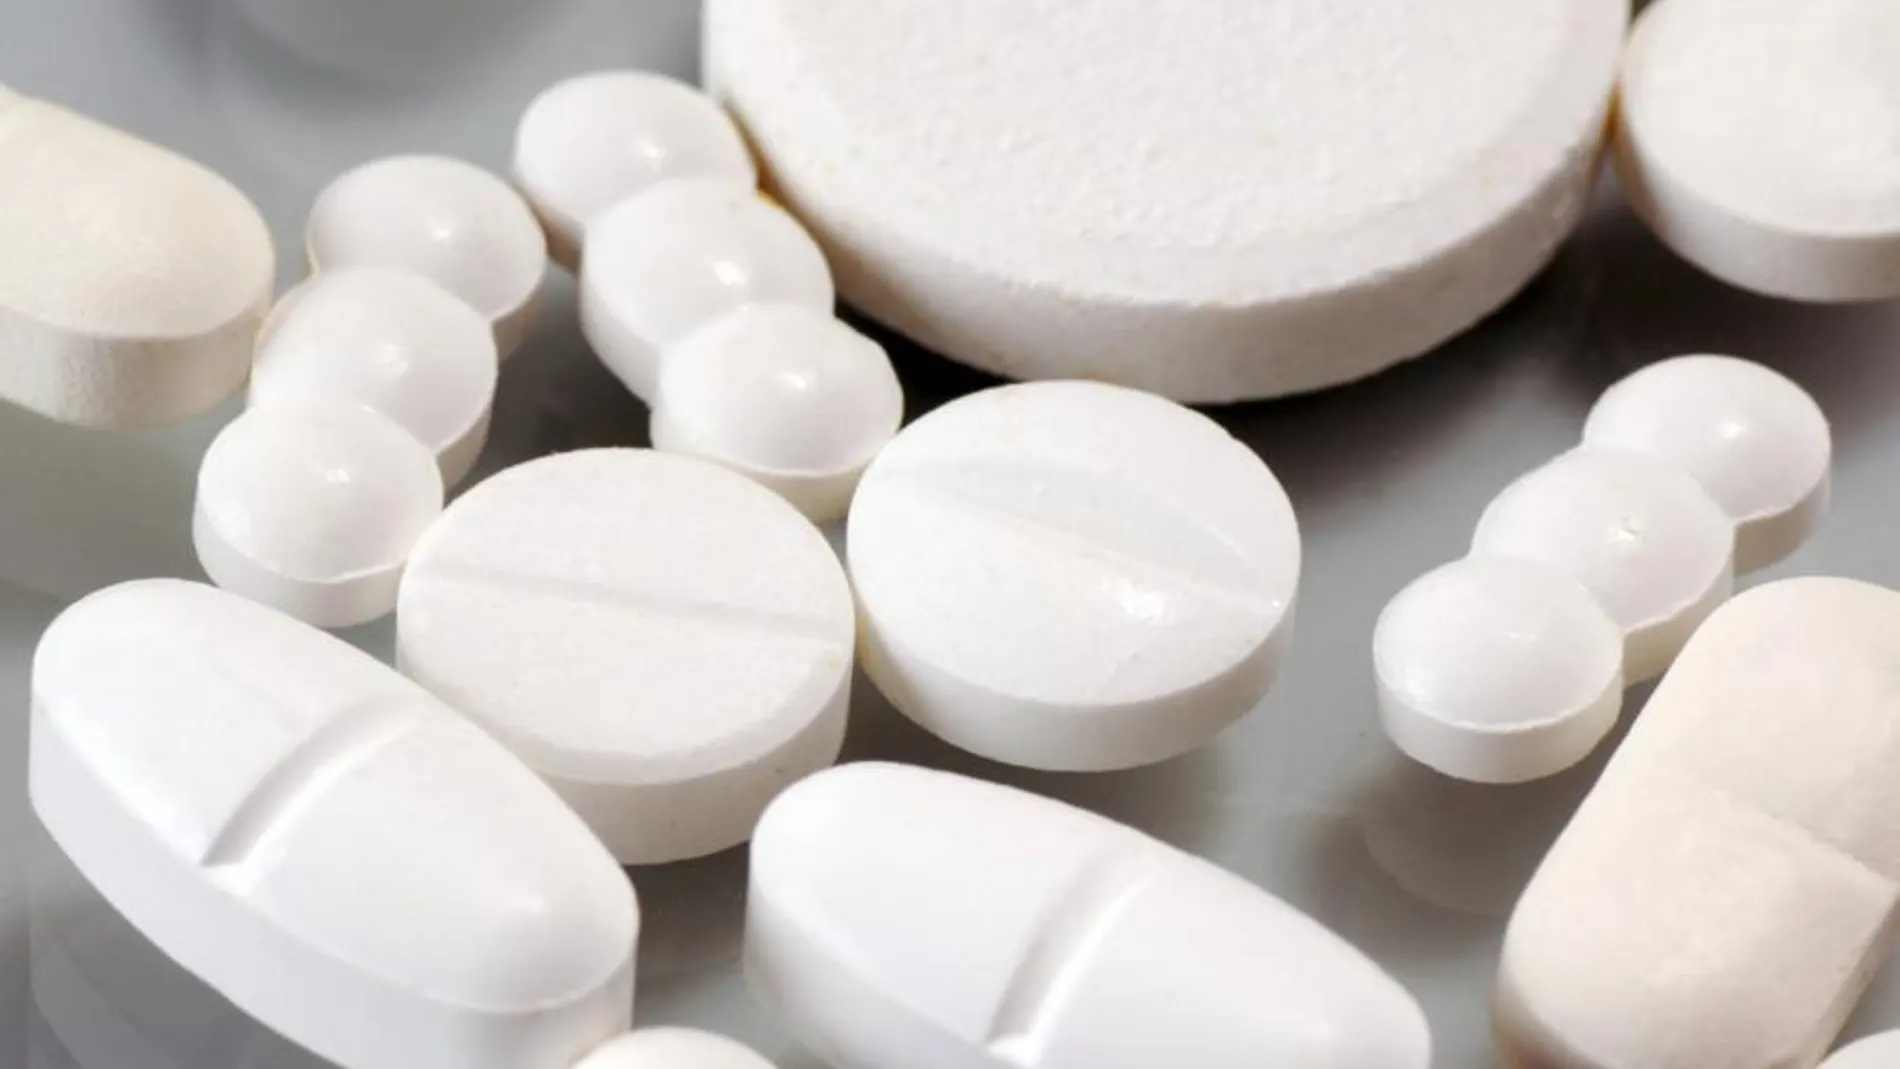 El estudio afirma que el paracetamol actúa como placebo contra el dolor lumbar